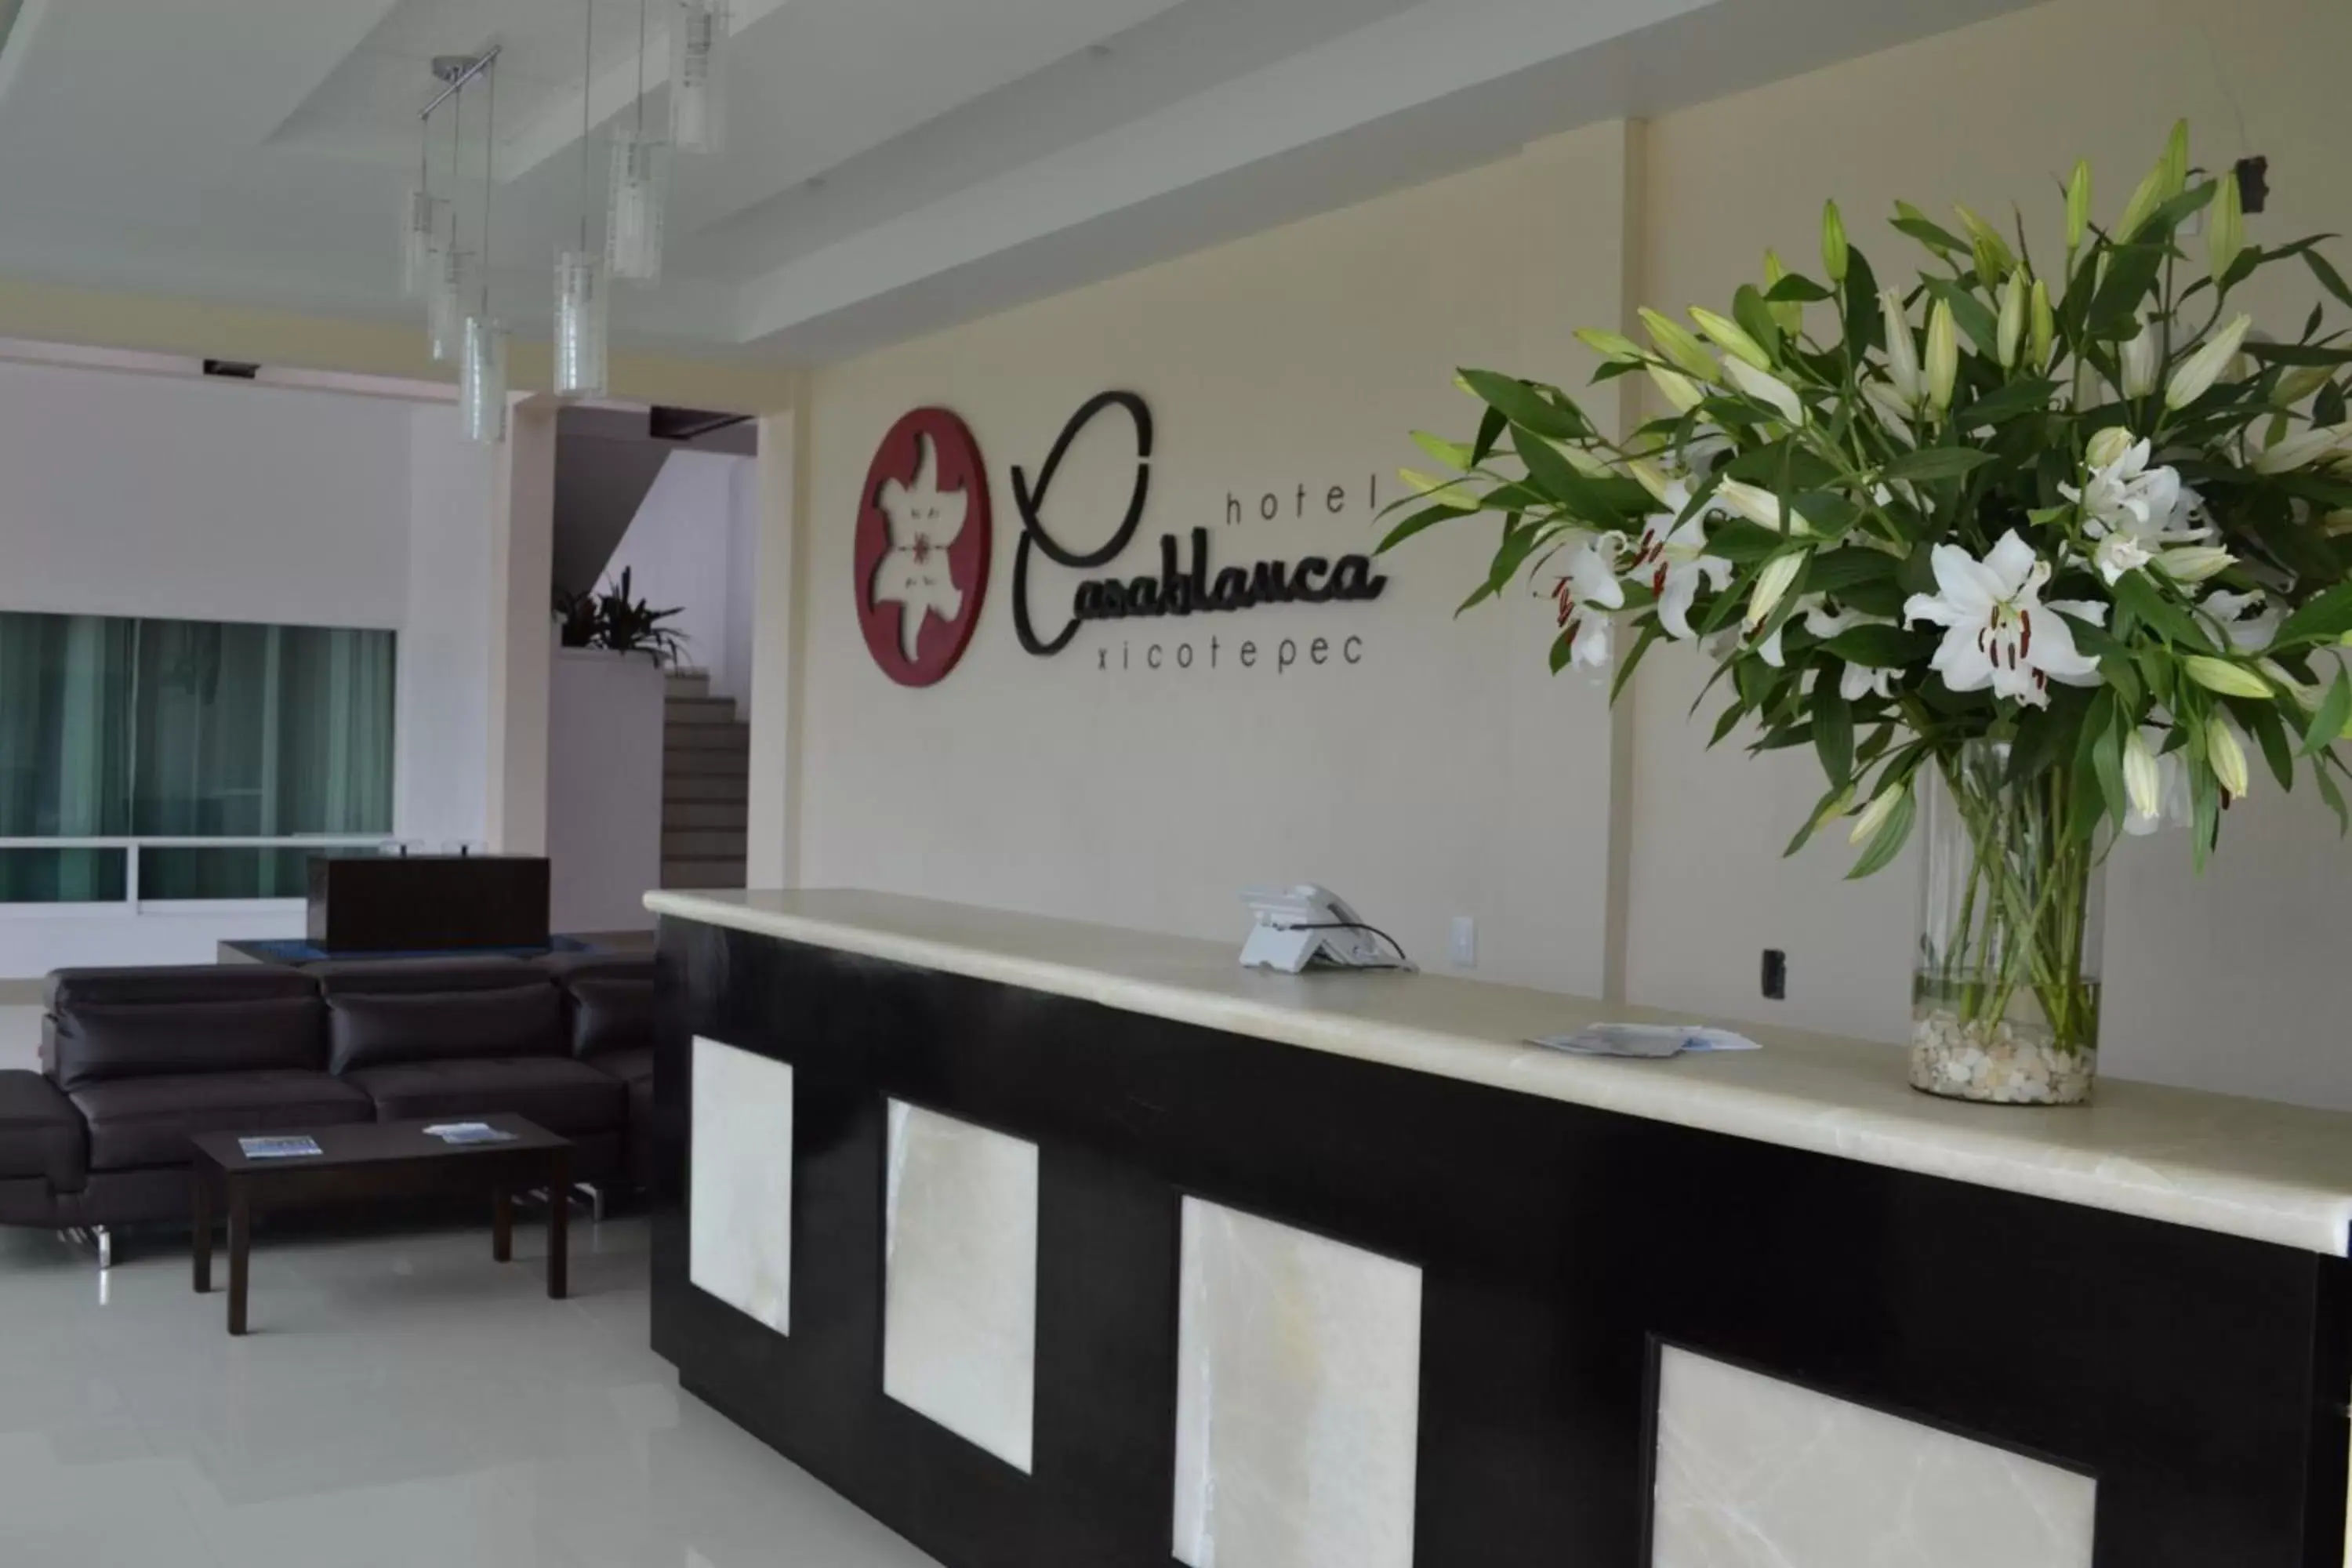 Lobby or reception, Lobby/Reception in Hotel Casablanca Xicotepec